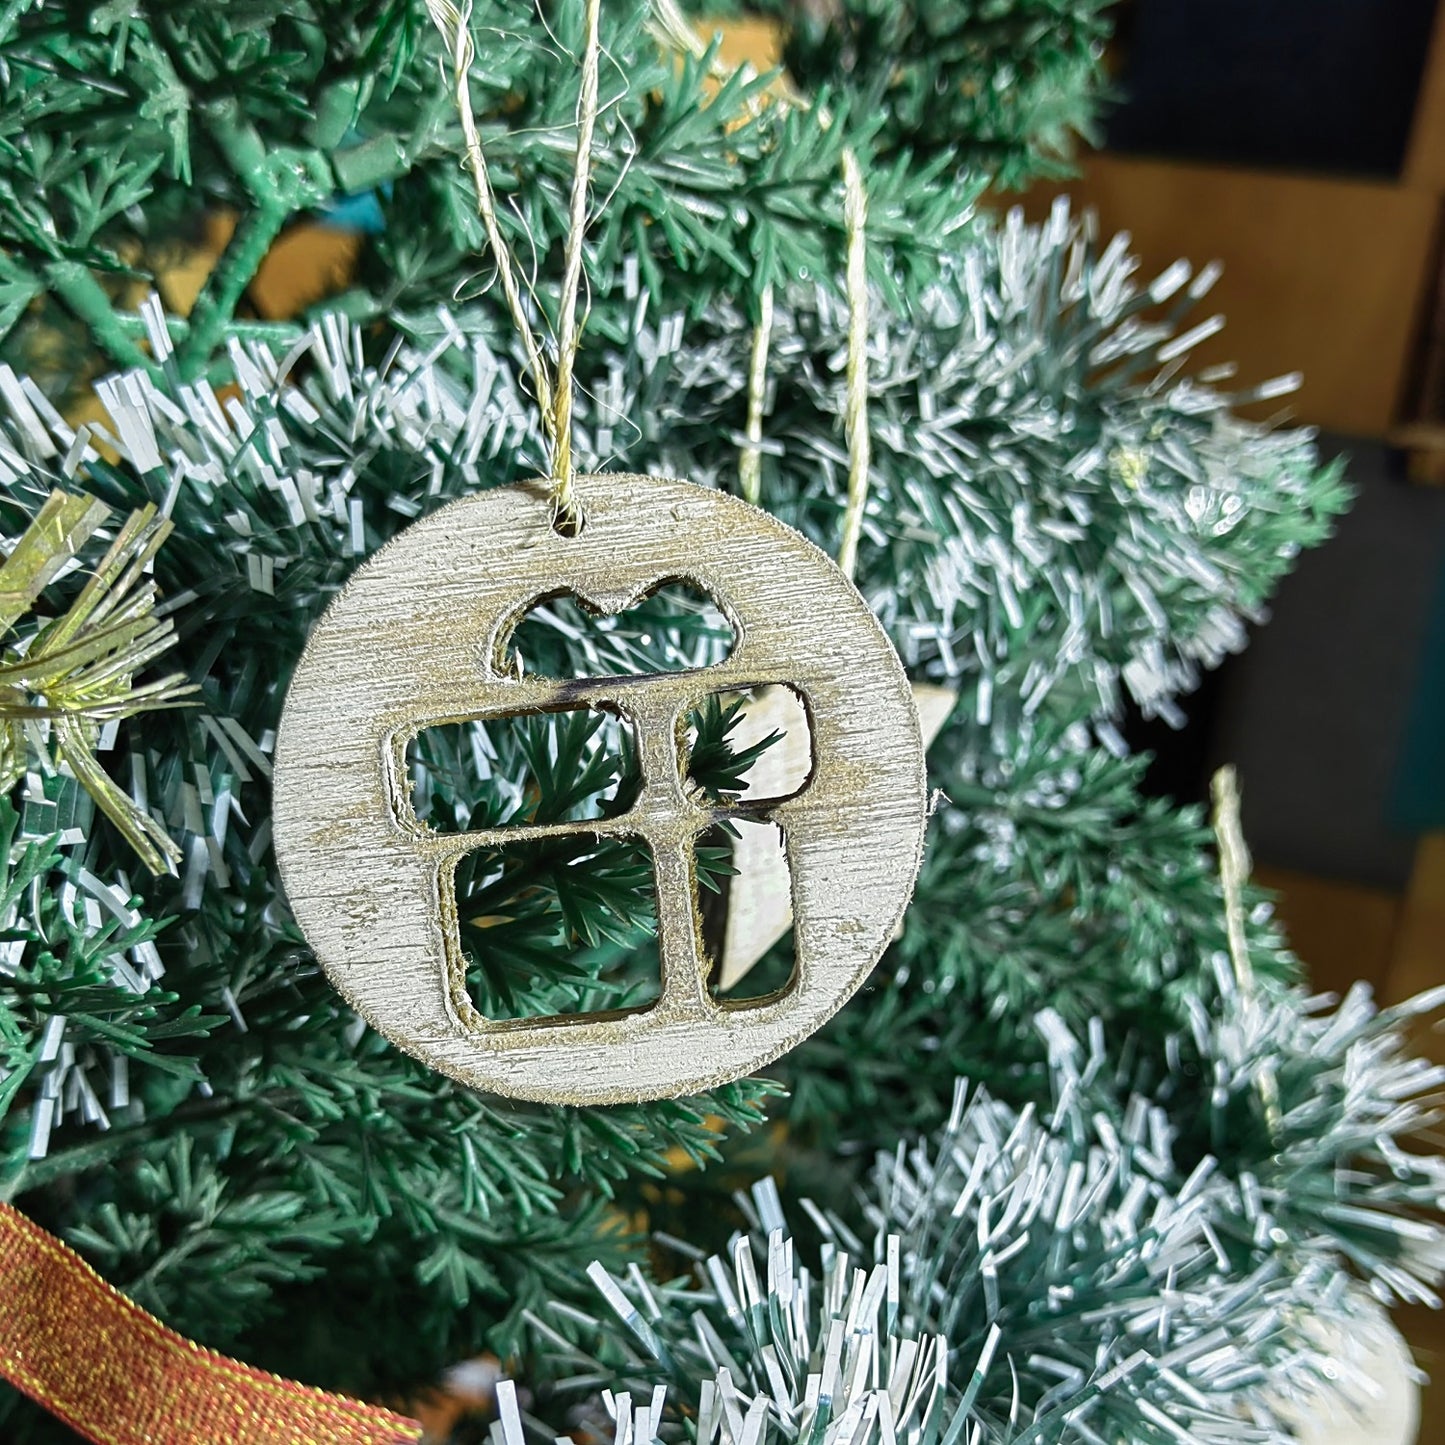 Adorno navideño tallado en madera con terminado vintage con forma de regalo de navidad